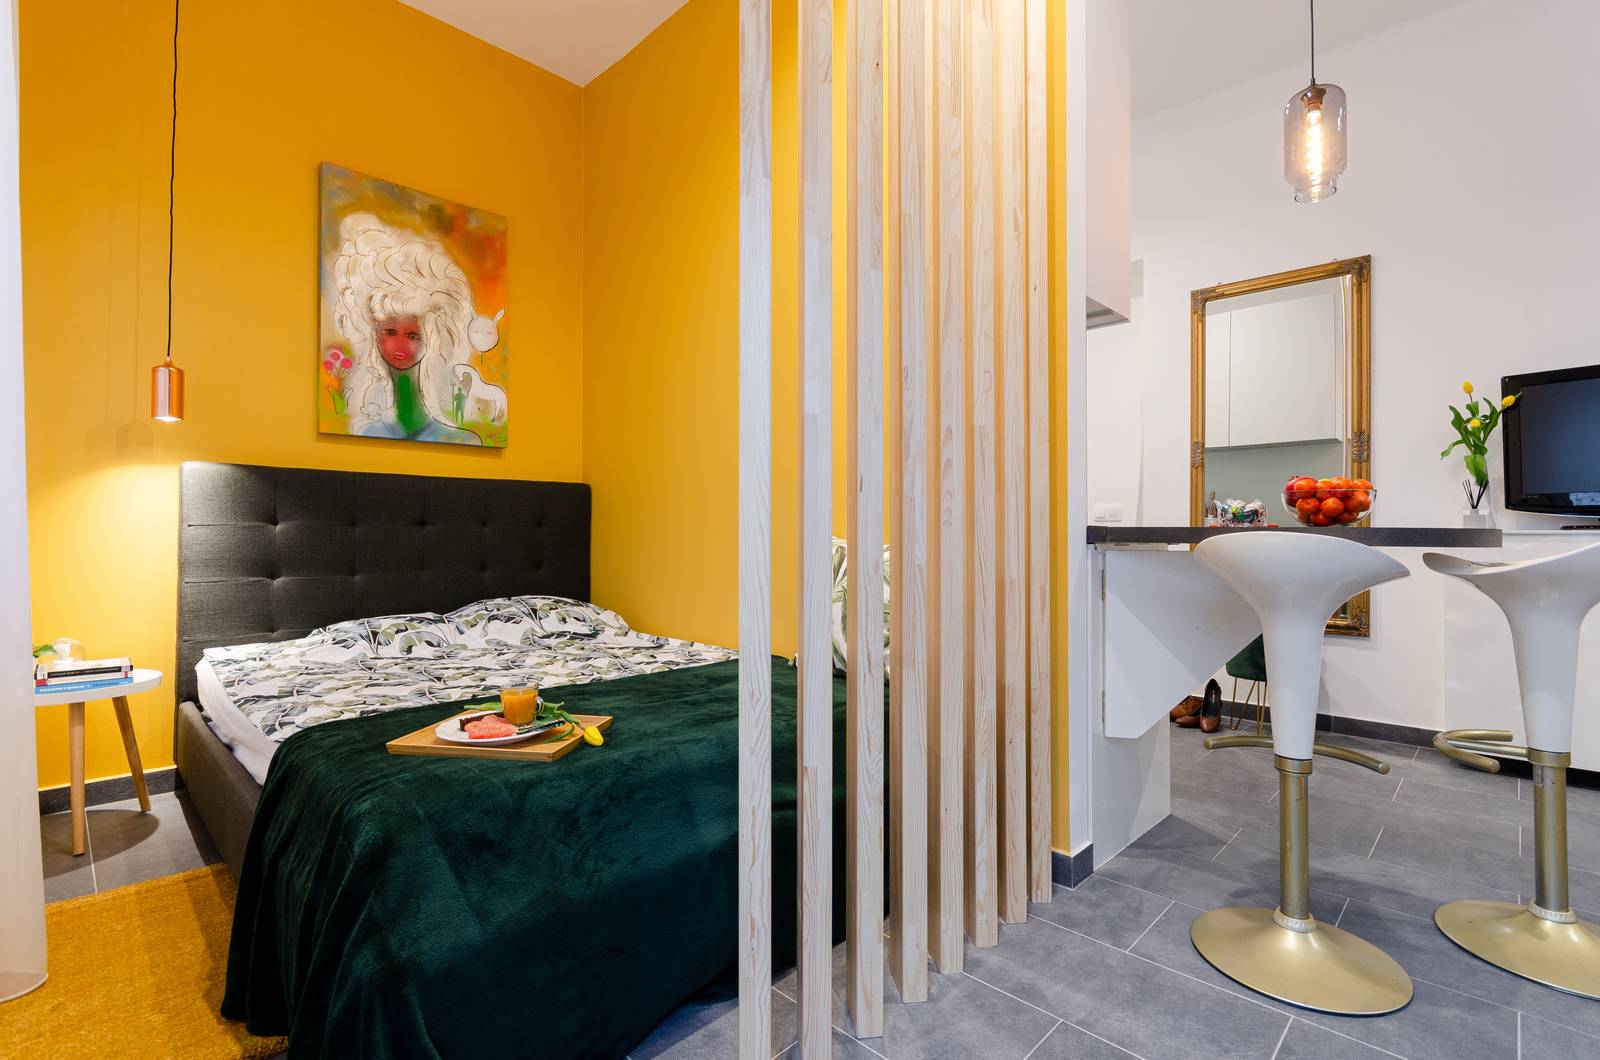 Tuy lựa chọn thiết kế mở nhưng phòng ngủ vẫn tạo được sự riêng tư nhất định với những tấm lam gỗ dọc và màu sơn tường siêu nổi bật.